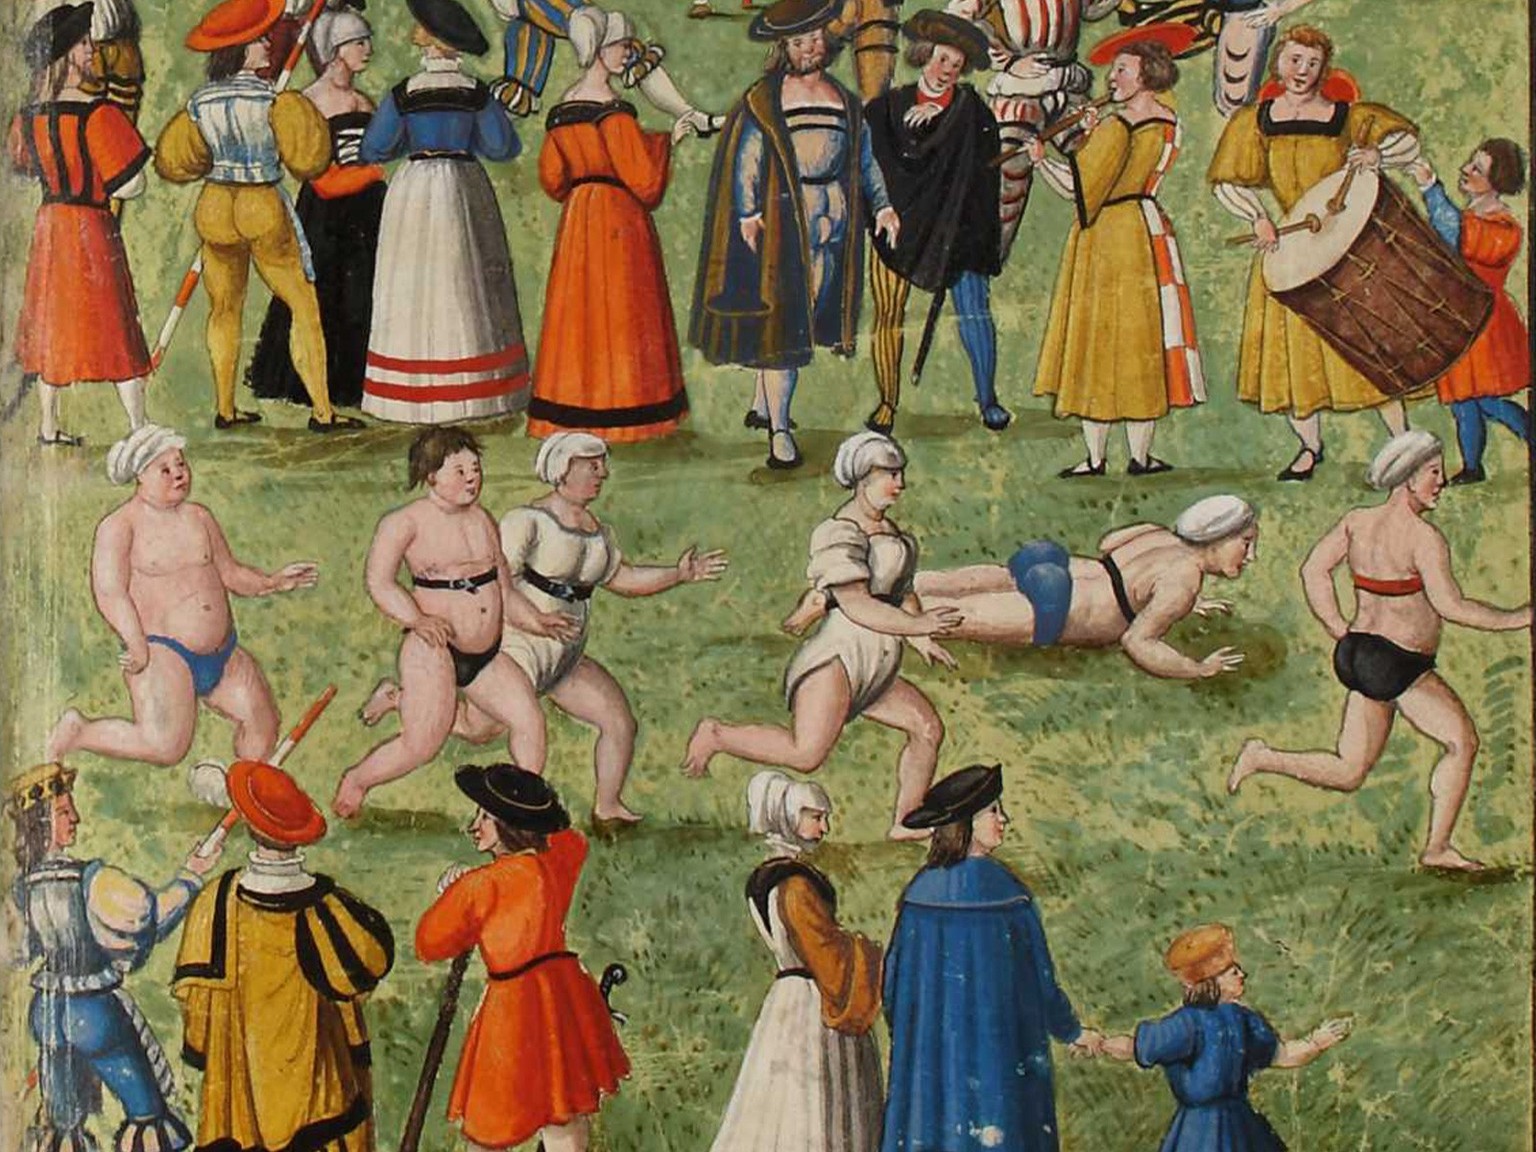 Femmes et hommes lors d’une épreuve de course à pied dans le cadre de la fête de tir d’Augsbourg en 1509, illustration vers 1570.
https://nbn-resolving.org/urn:nbn:de:bvb:29-bv041822029-3#0335